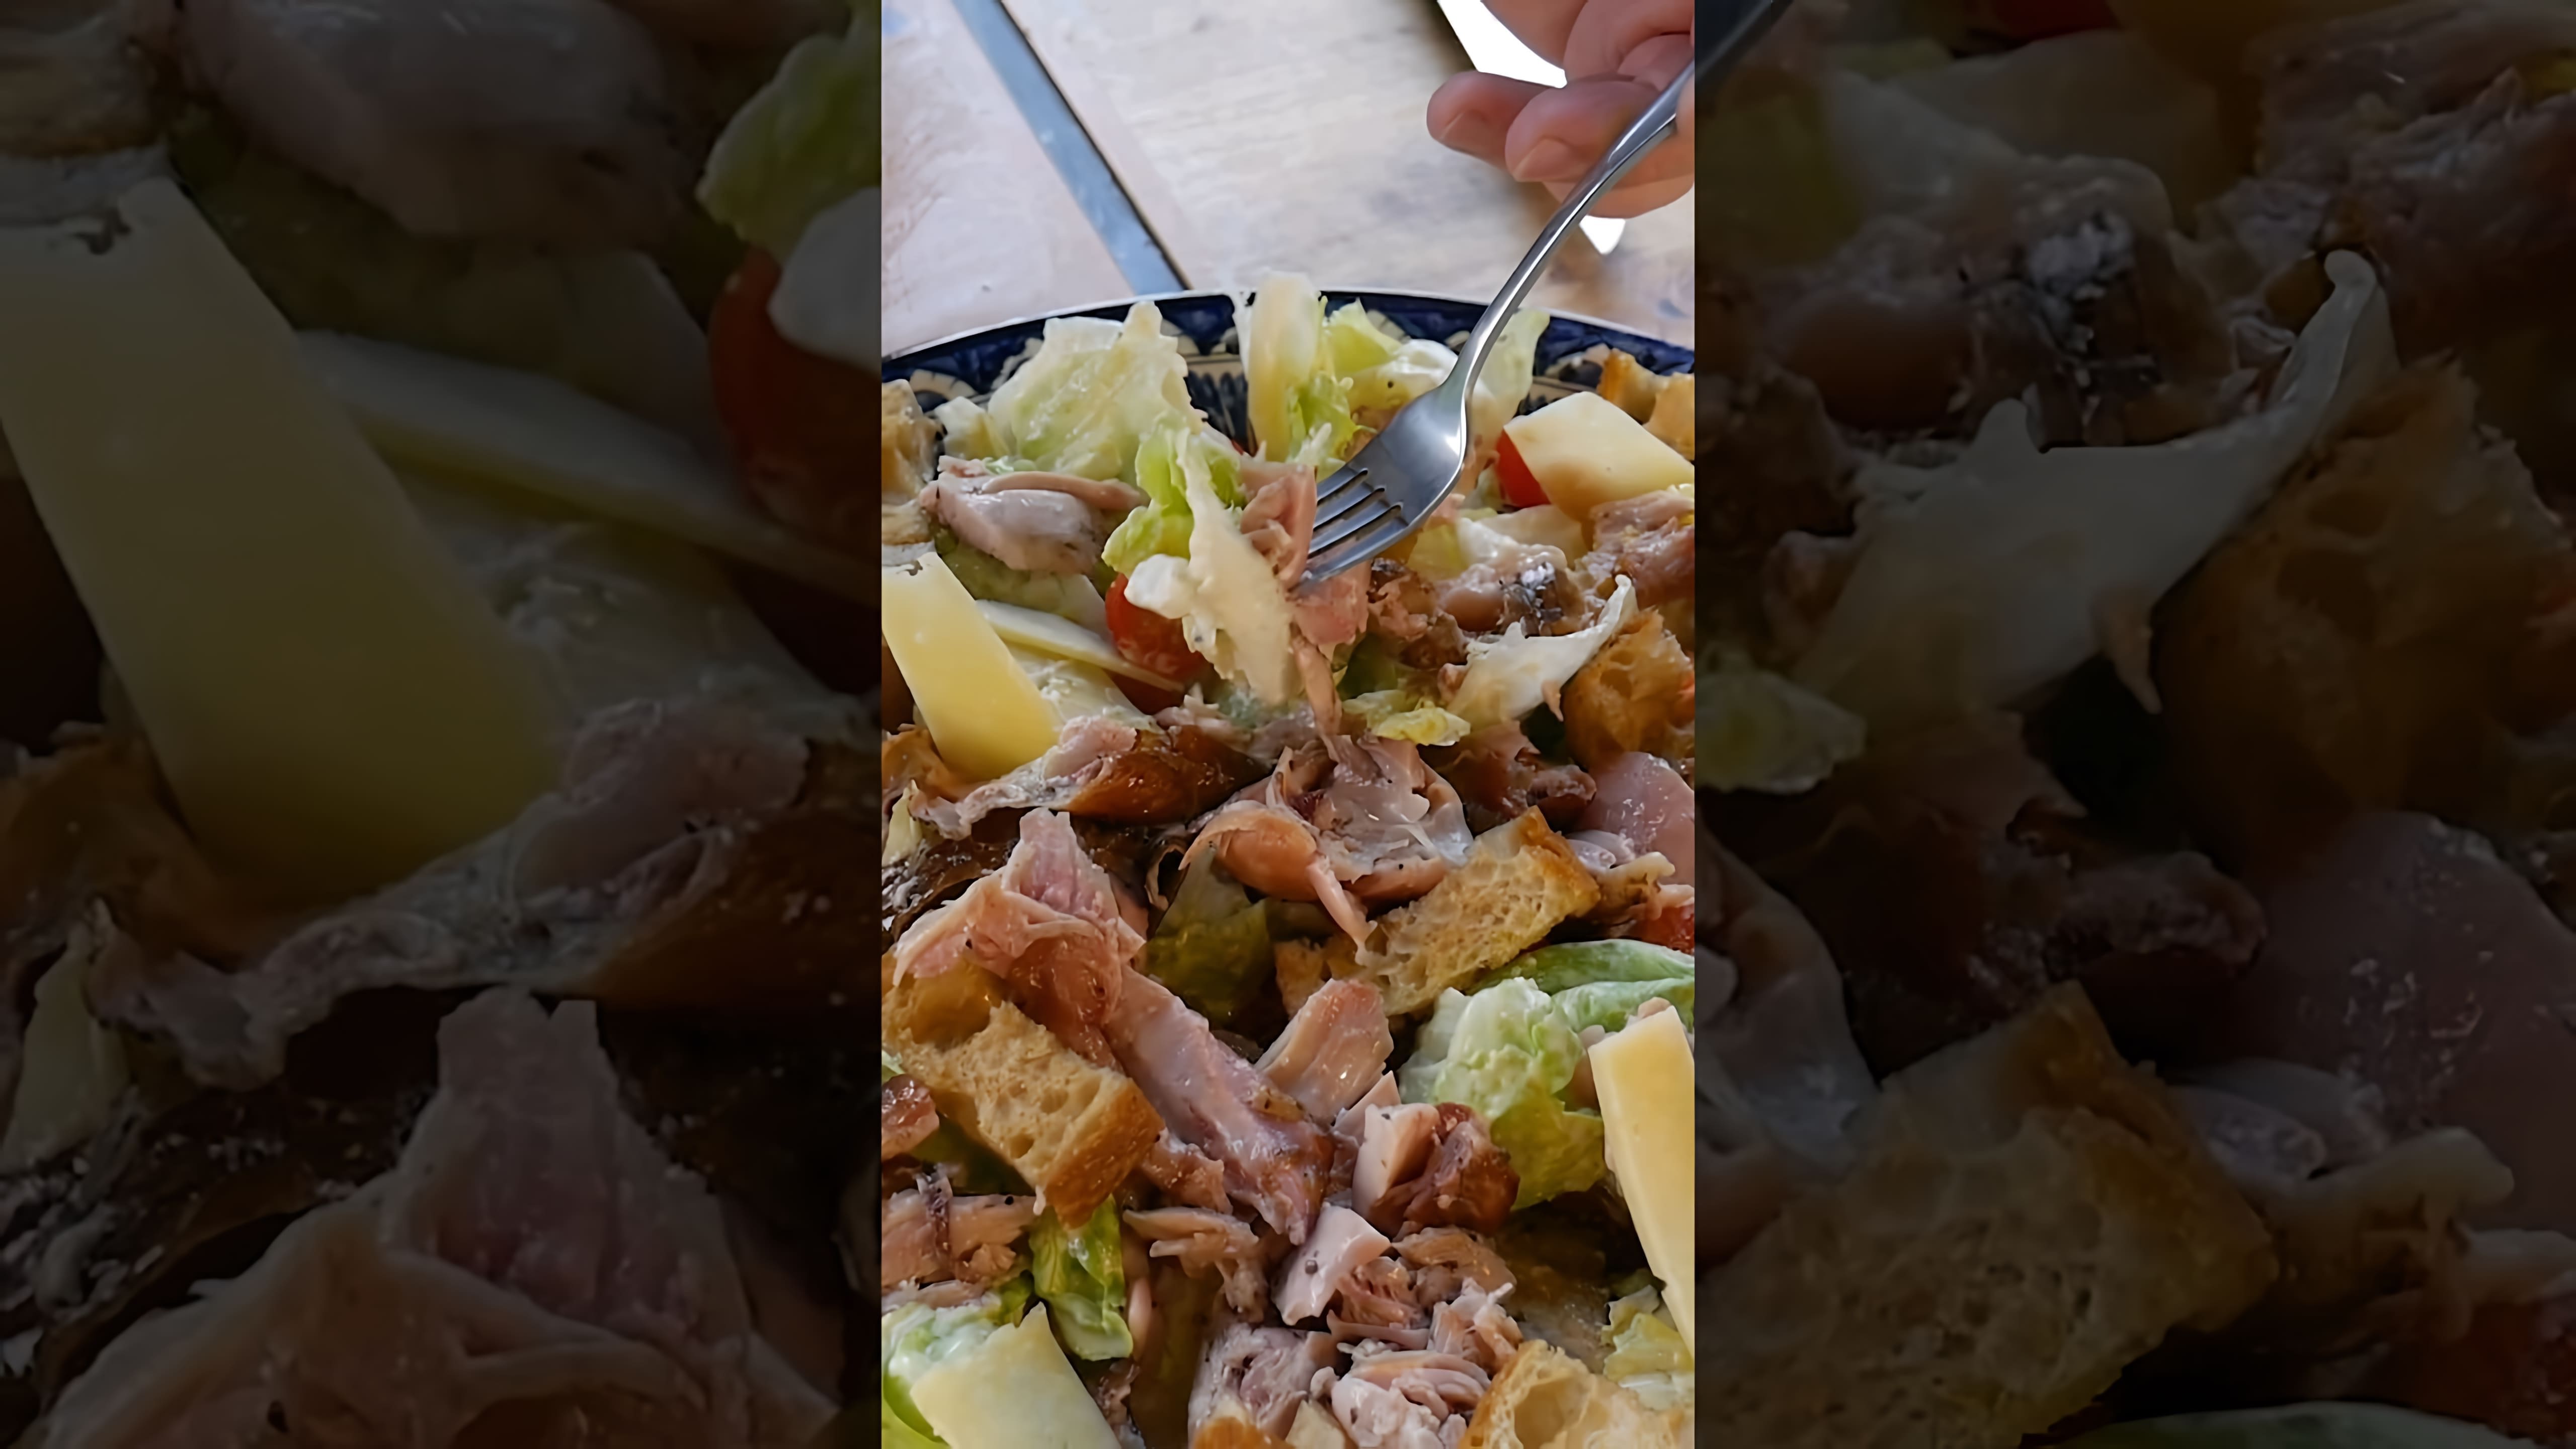 В этом видео демонстрируется процесс приготовления салата Цезарь с копчёной курицей